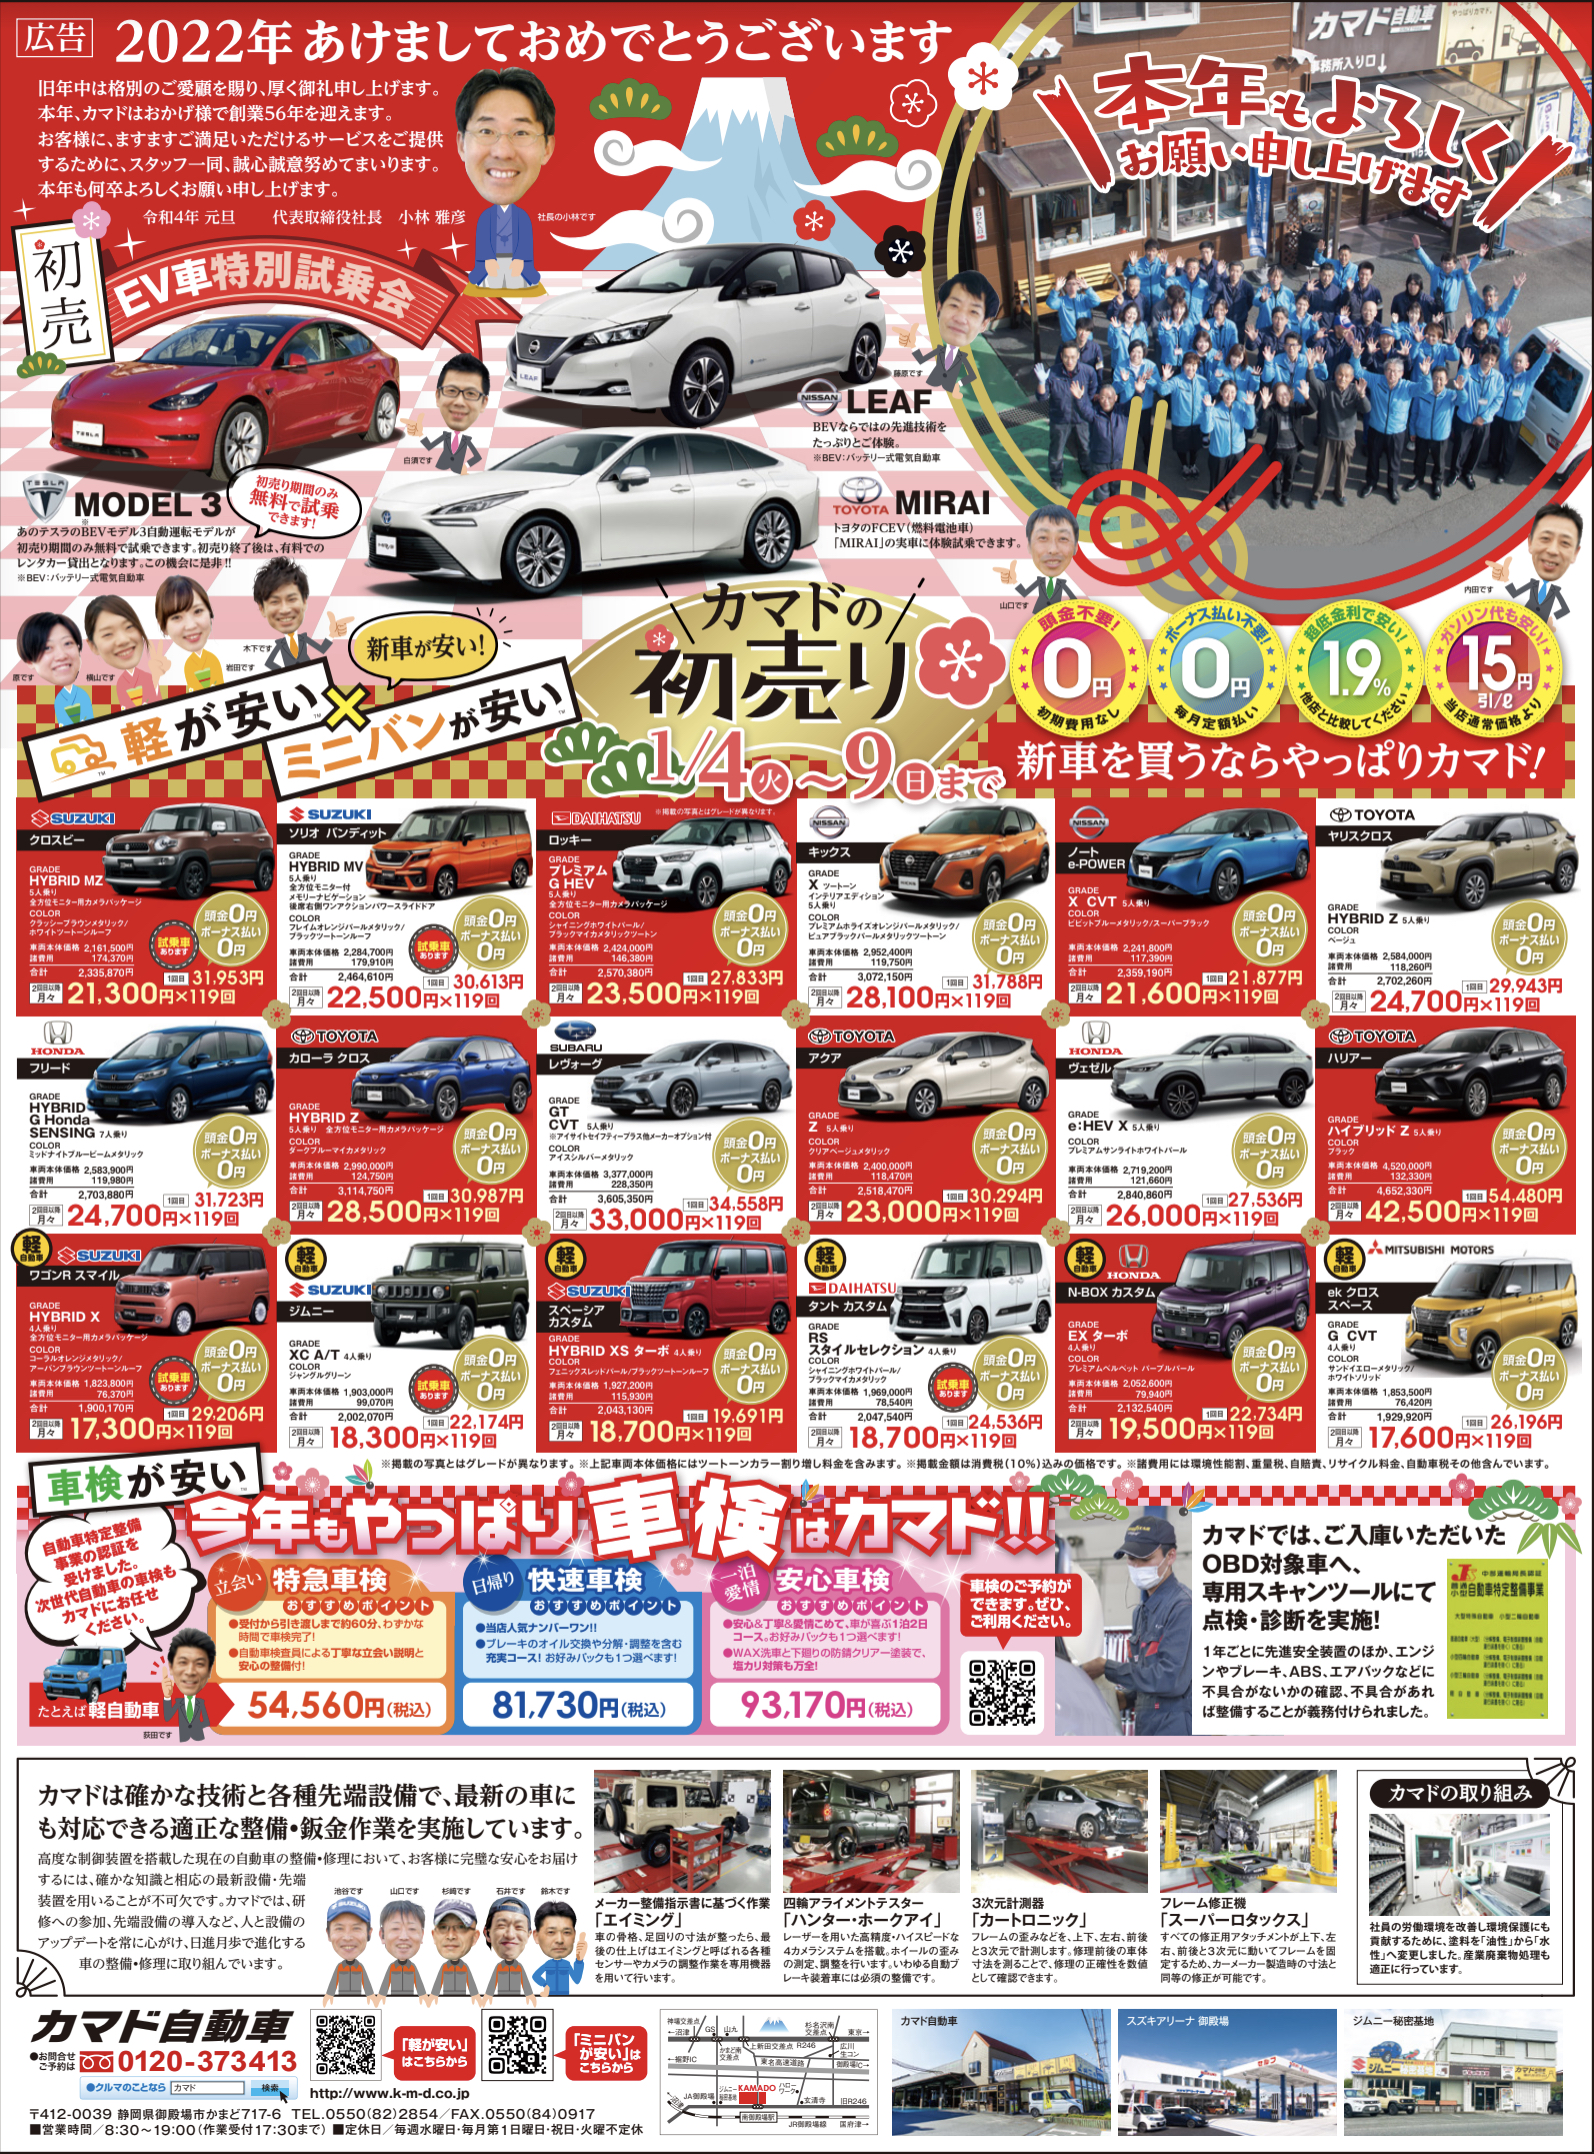 本日の静岡新聞に広告が掲載されます 新着情報一覧 株式会社カマド 車のことなら何でもカマド Jr御殿場線 南御殿場駅前の車屋さん